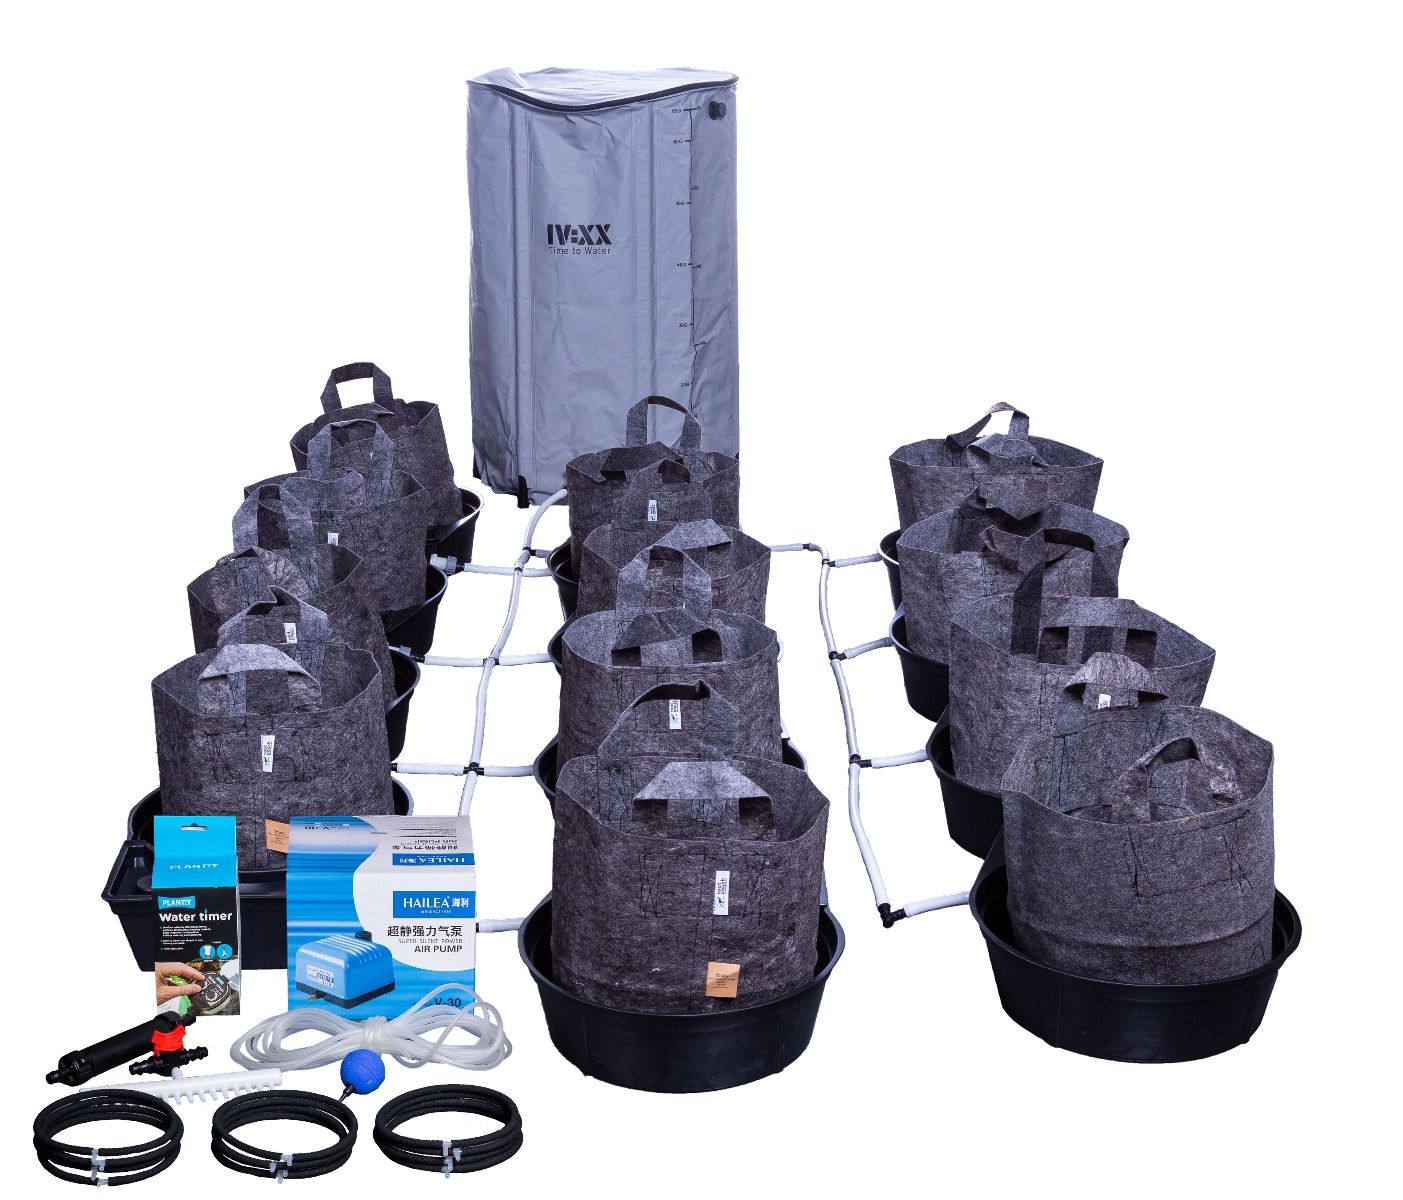 MegaPot Single Pot 22L Complete Kits